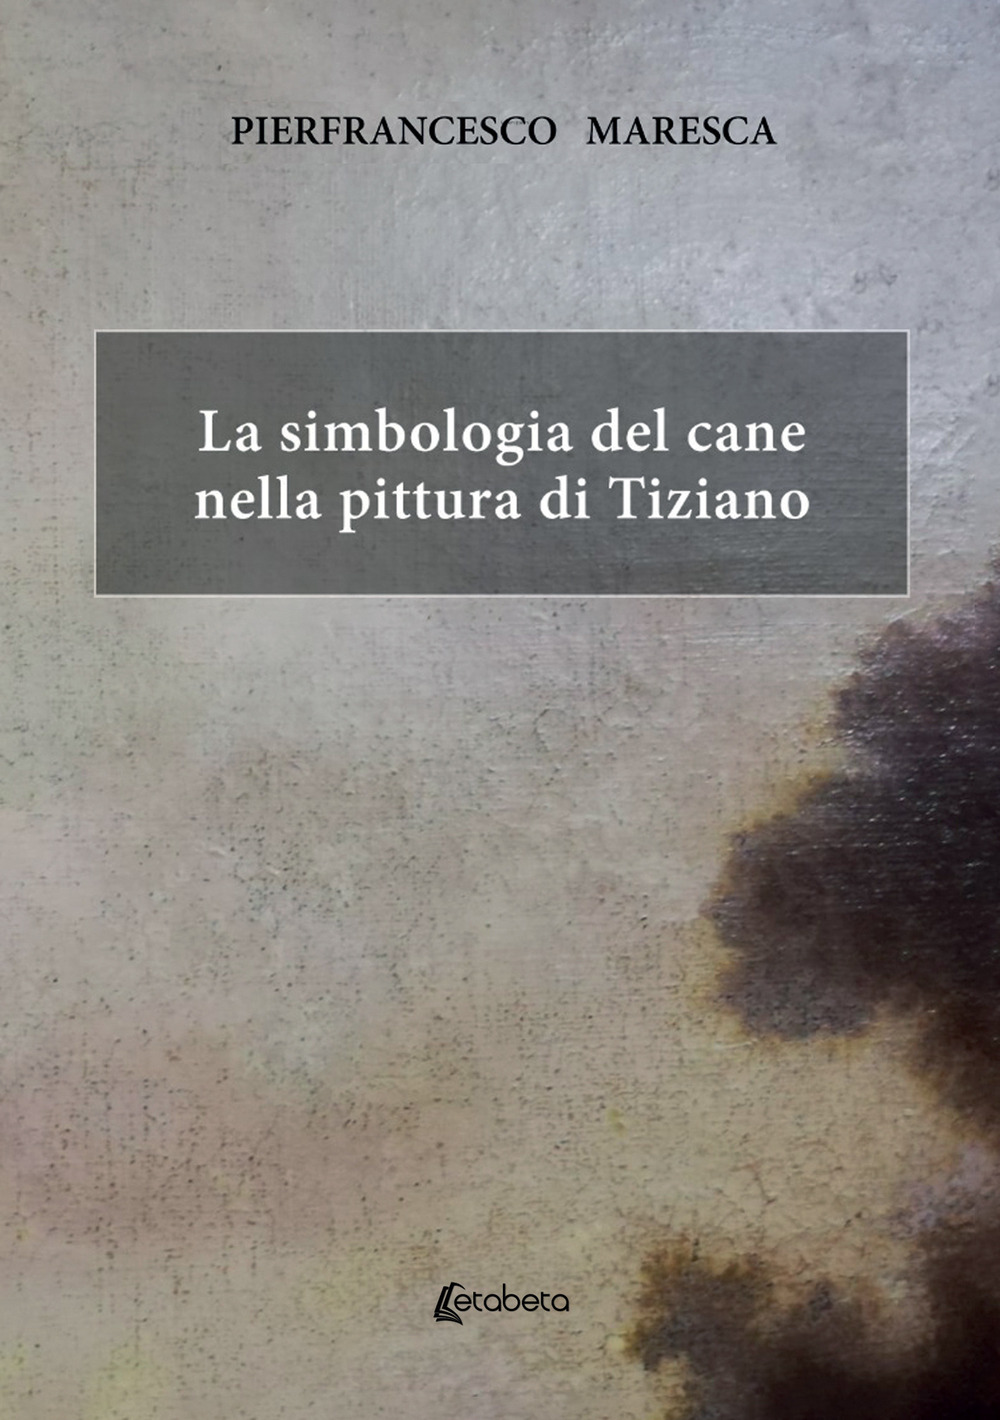 La simbologia del cane nella pittura di Tiziano